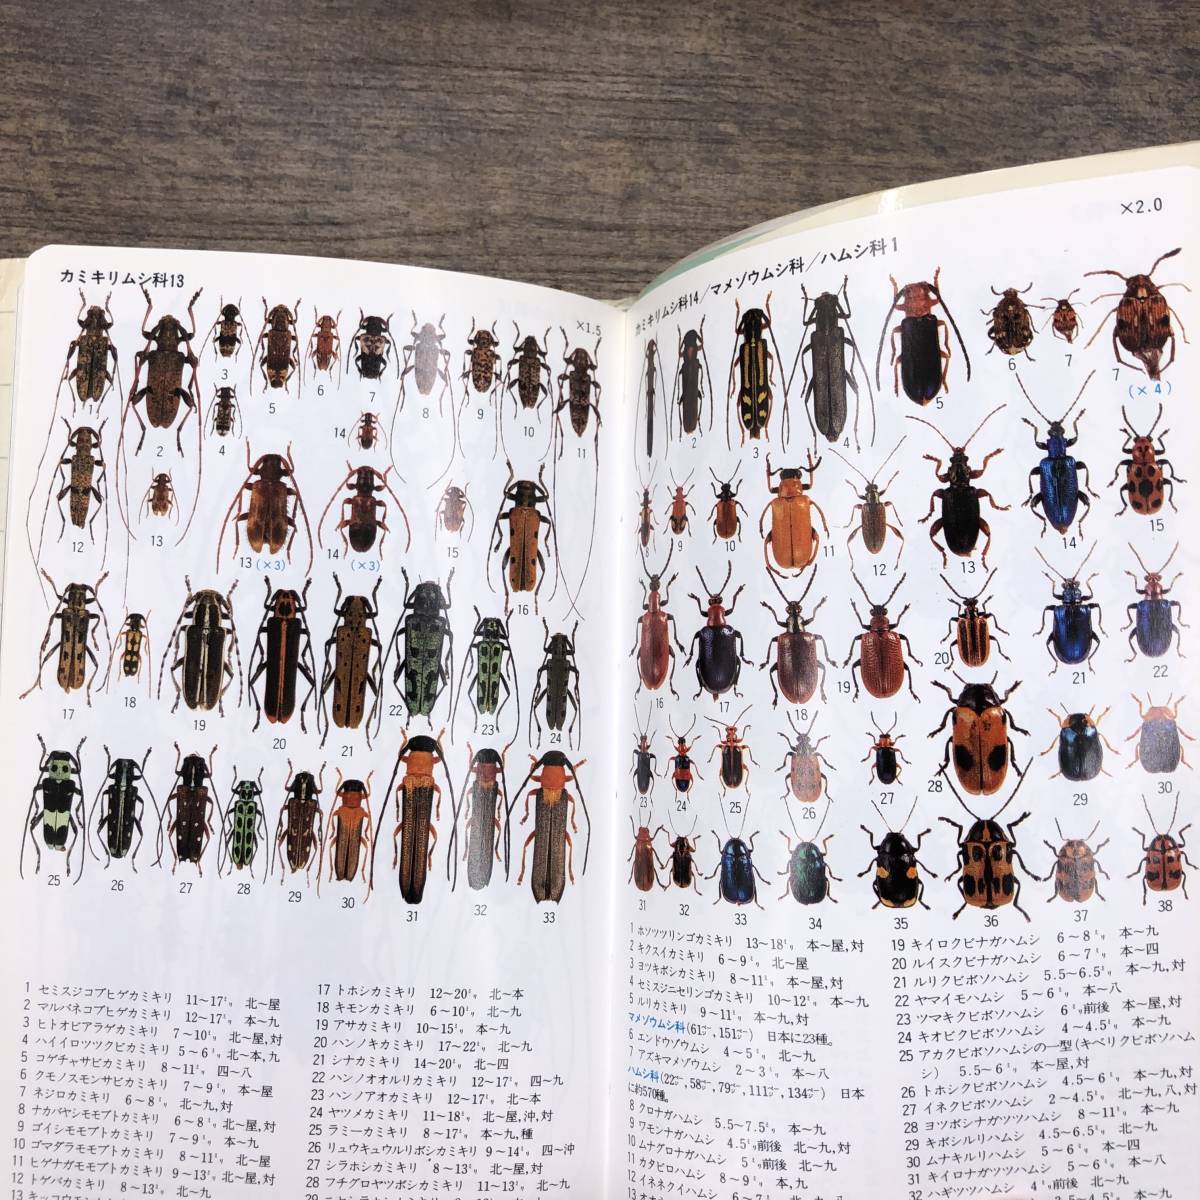 Z-4756#. насекомое ( гора . поле книги 13)# насекомое иллюстрированная книга # чёрный . хорошо ./ описание Kuribayashi ./ фотография # гора ... фирма #1996 год 6 месяц 1 день первая версия no. 1.